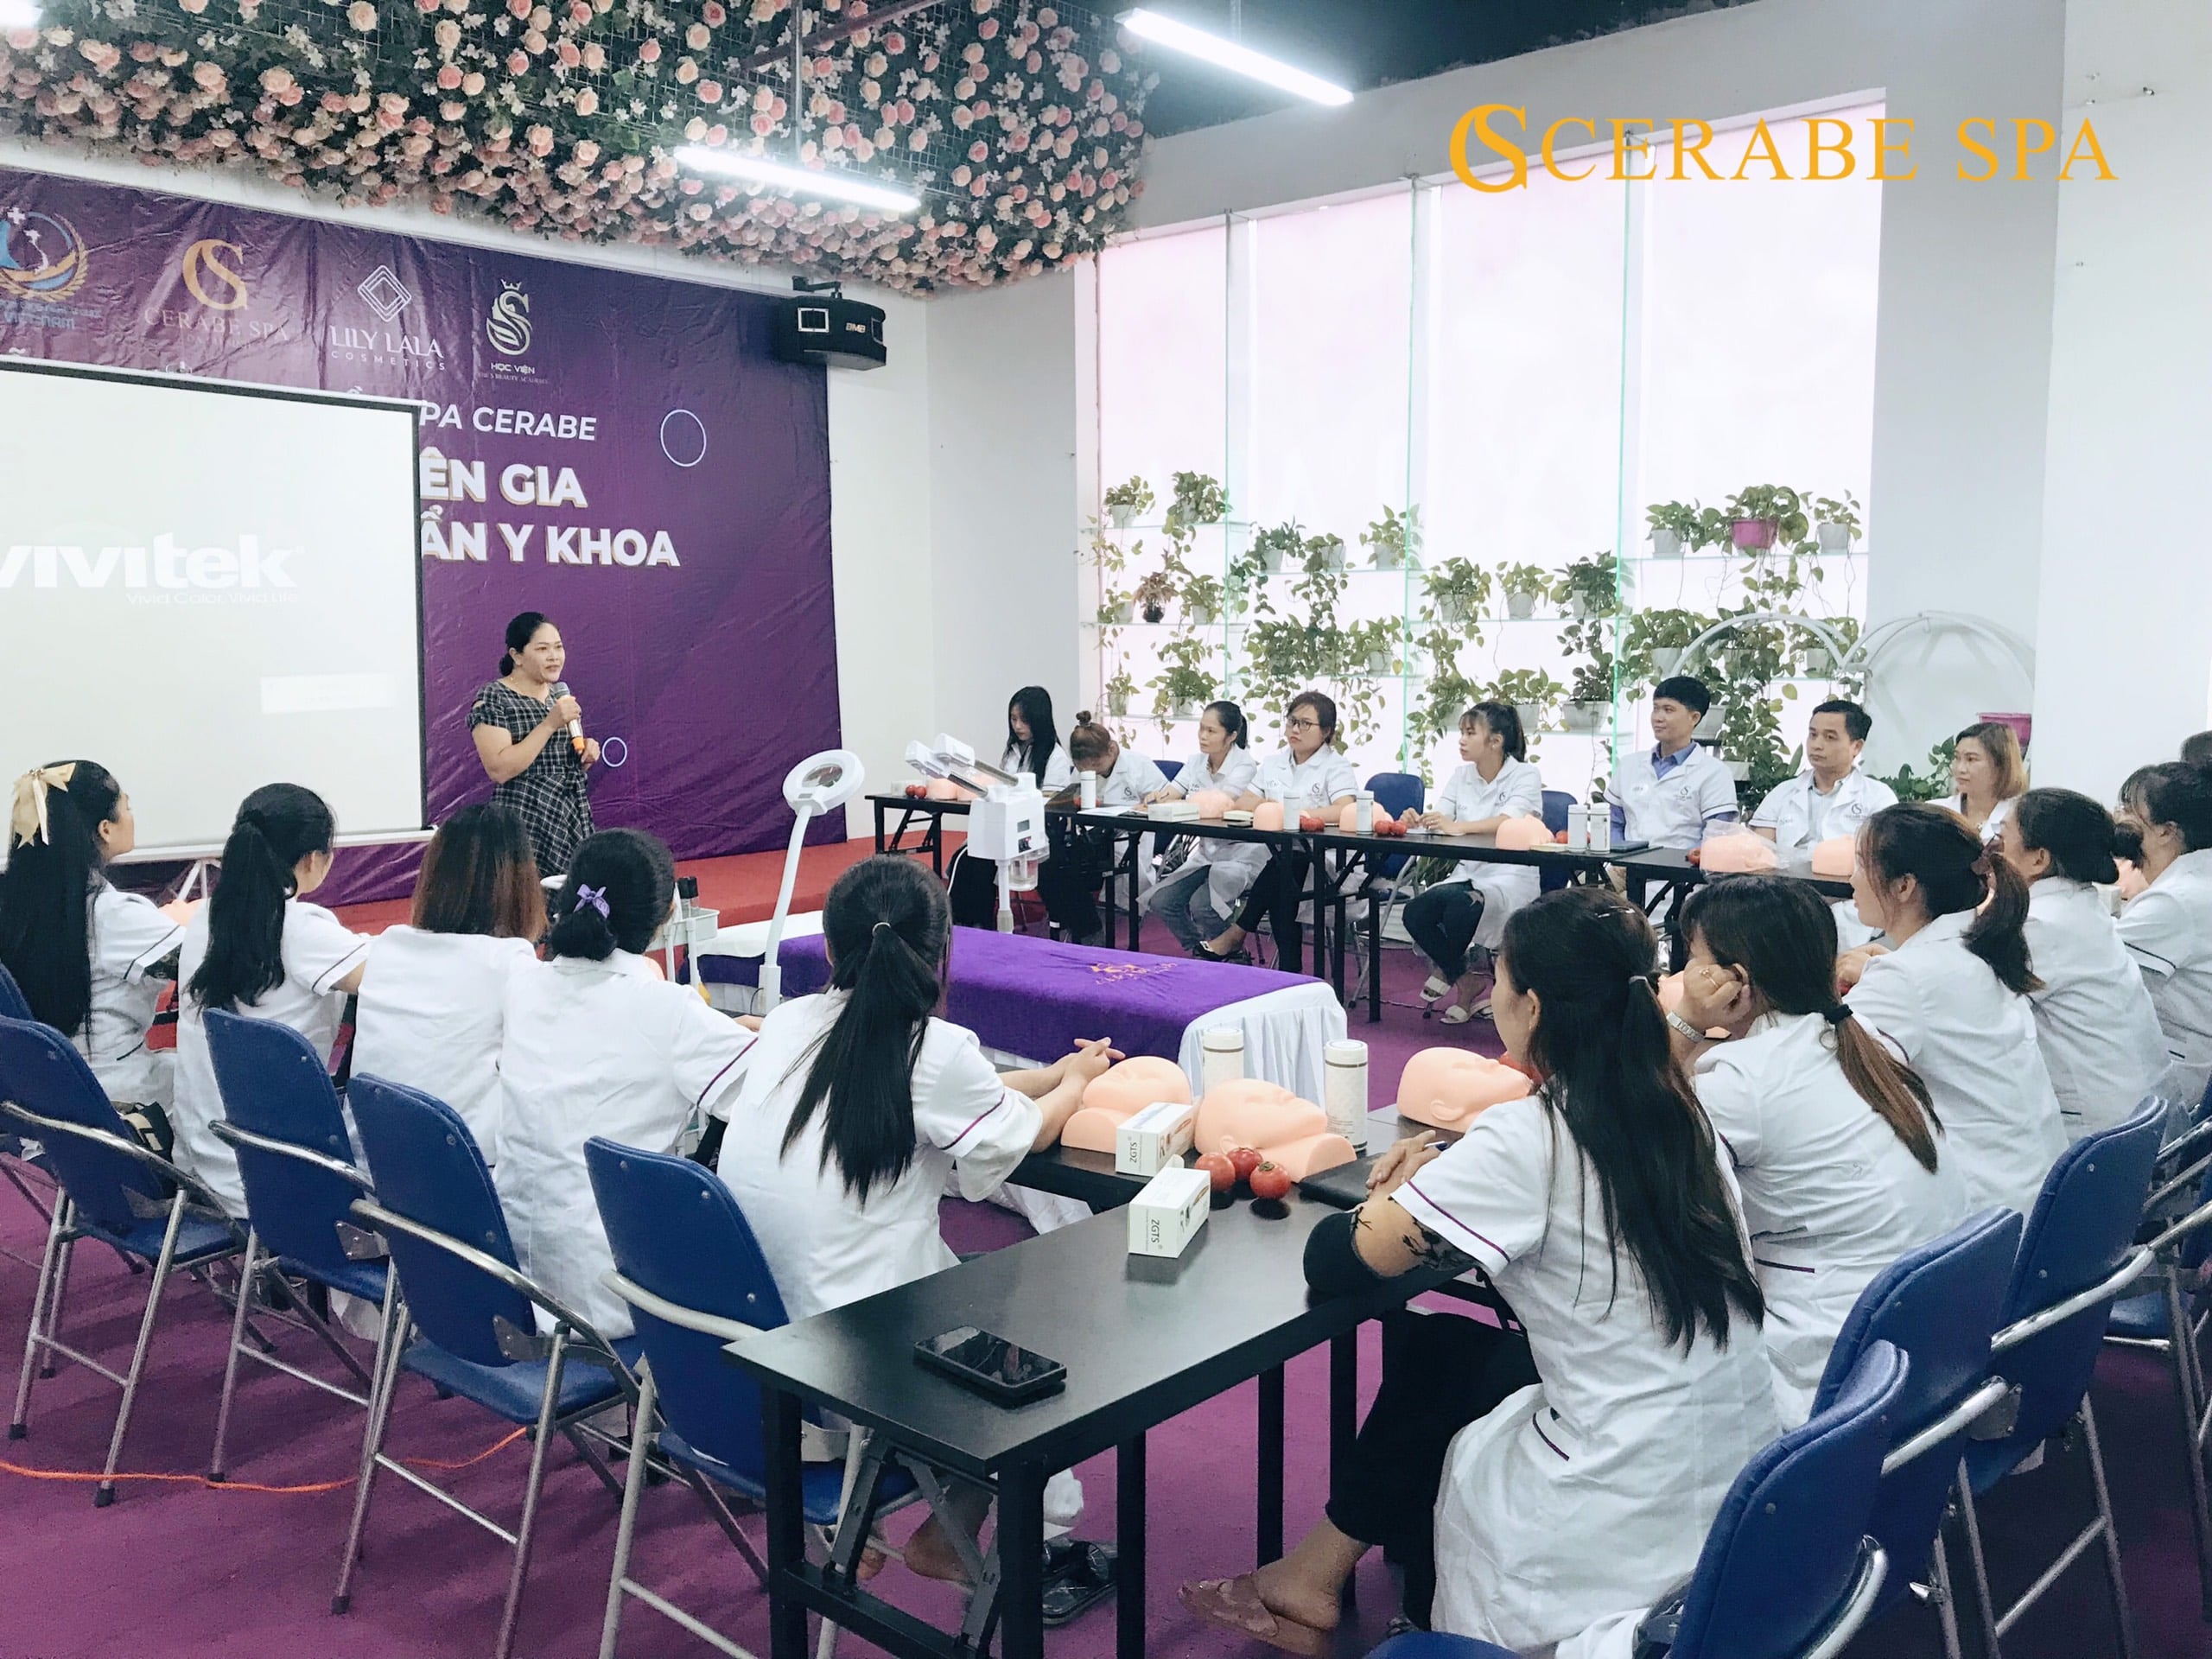 Chuyên gia Nguyễn Thu - Tân chủ Spa Cerabe cơ sở 2 chia sẻ trong buổi đào tạo